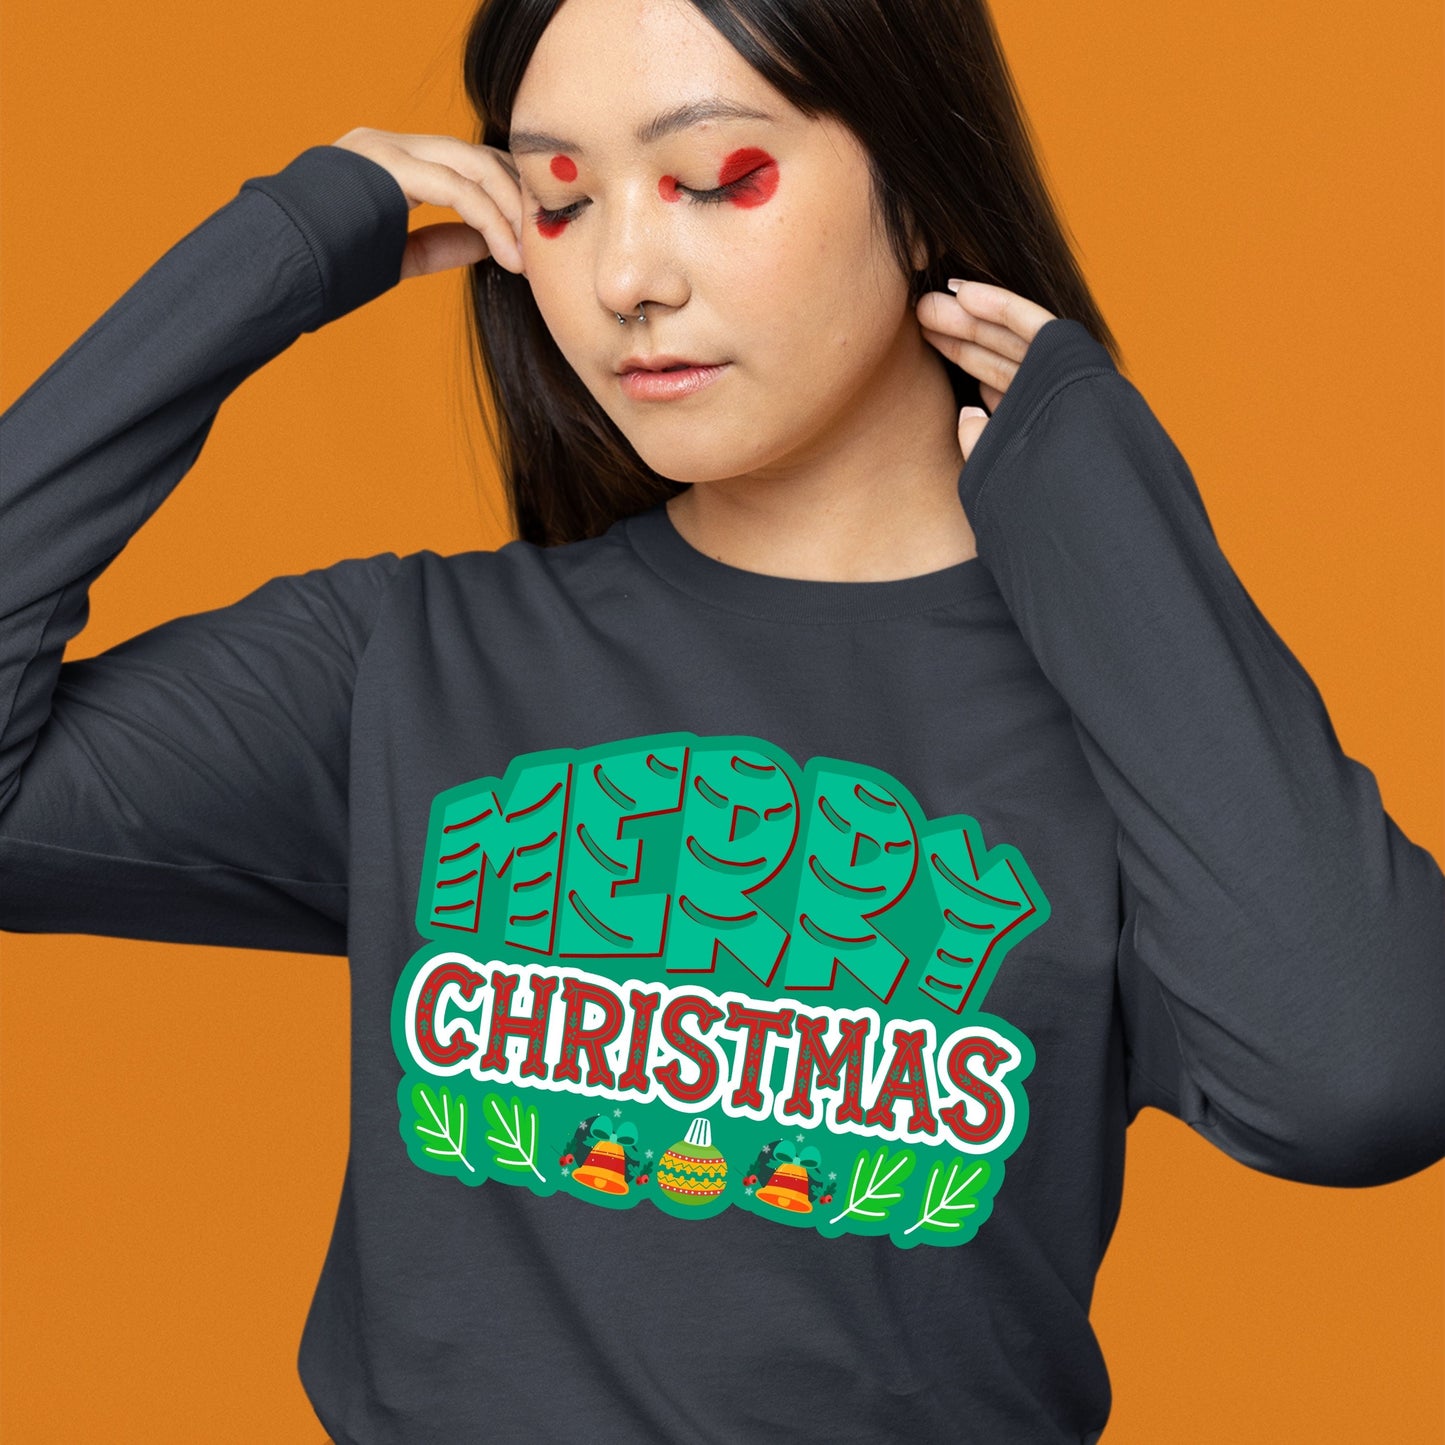 Merry Christmas, Christmas Long Sleeves, Christmas Crewneck For Women, Christmas Present, Christmas Sweater, Christmas Sweatshirt